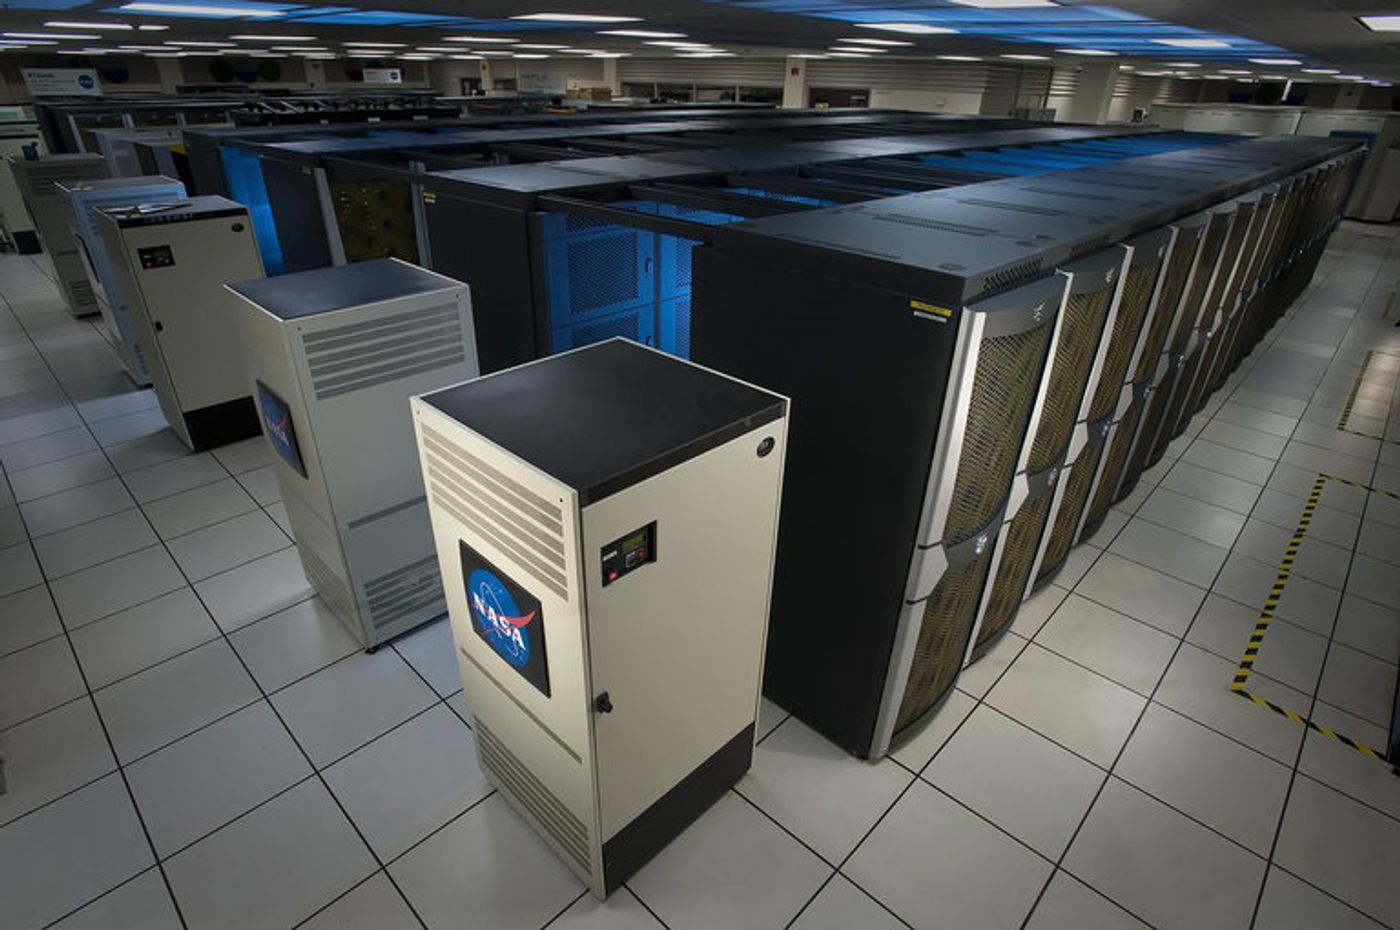 An illustration of a NASA supercomputer.